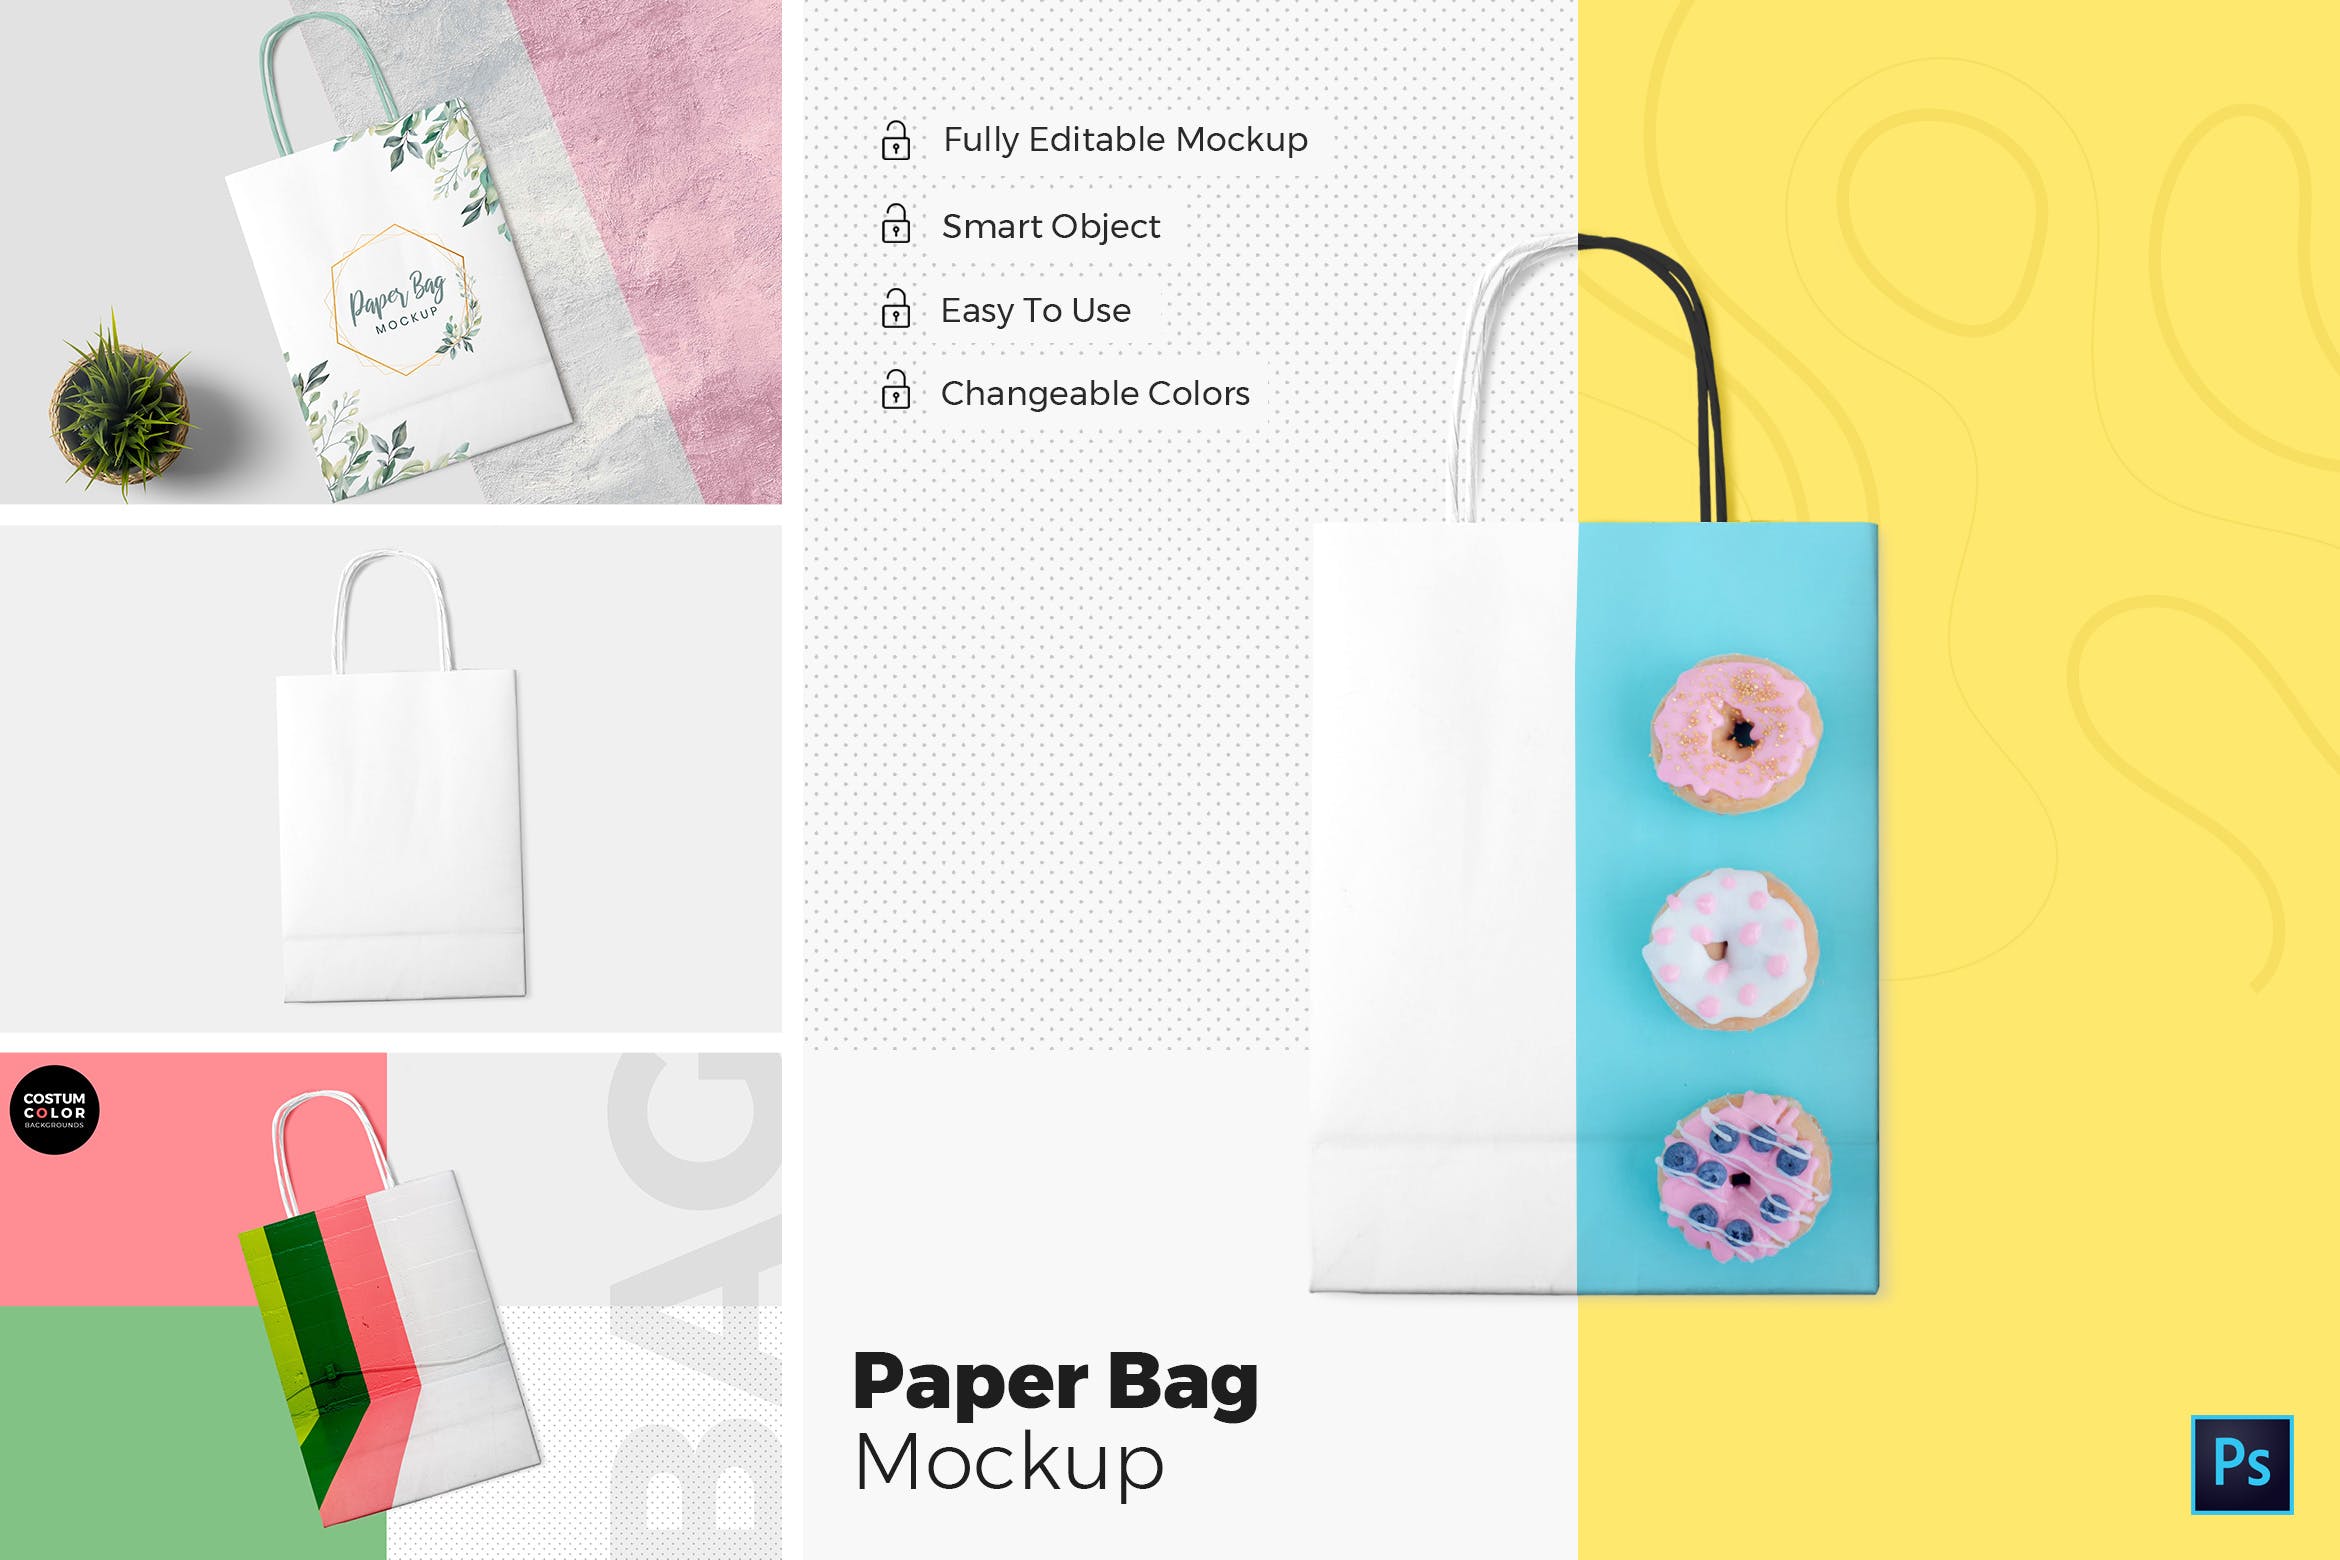 纸质购物袋礼品袋外观图案设计图第一素材精选 Paper Bag Mockups插图